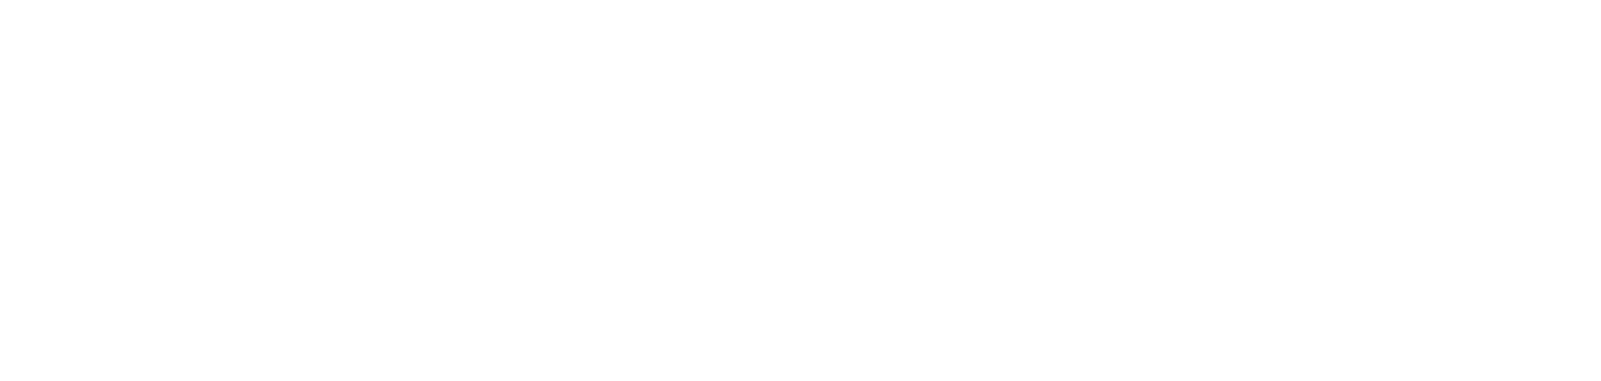 KKR & Co. logo pour fonds sombres (PNG transparent)